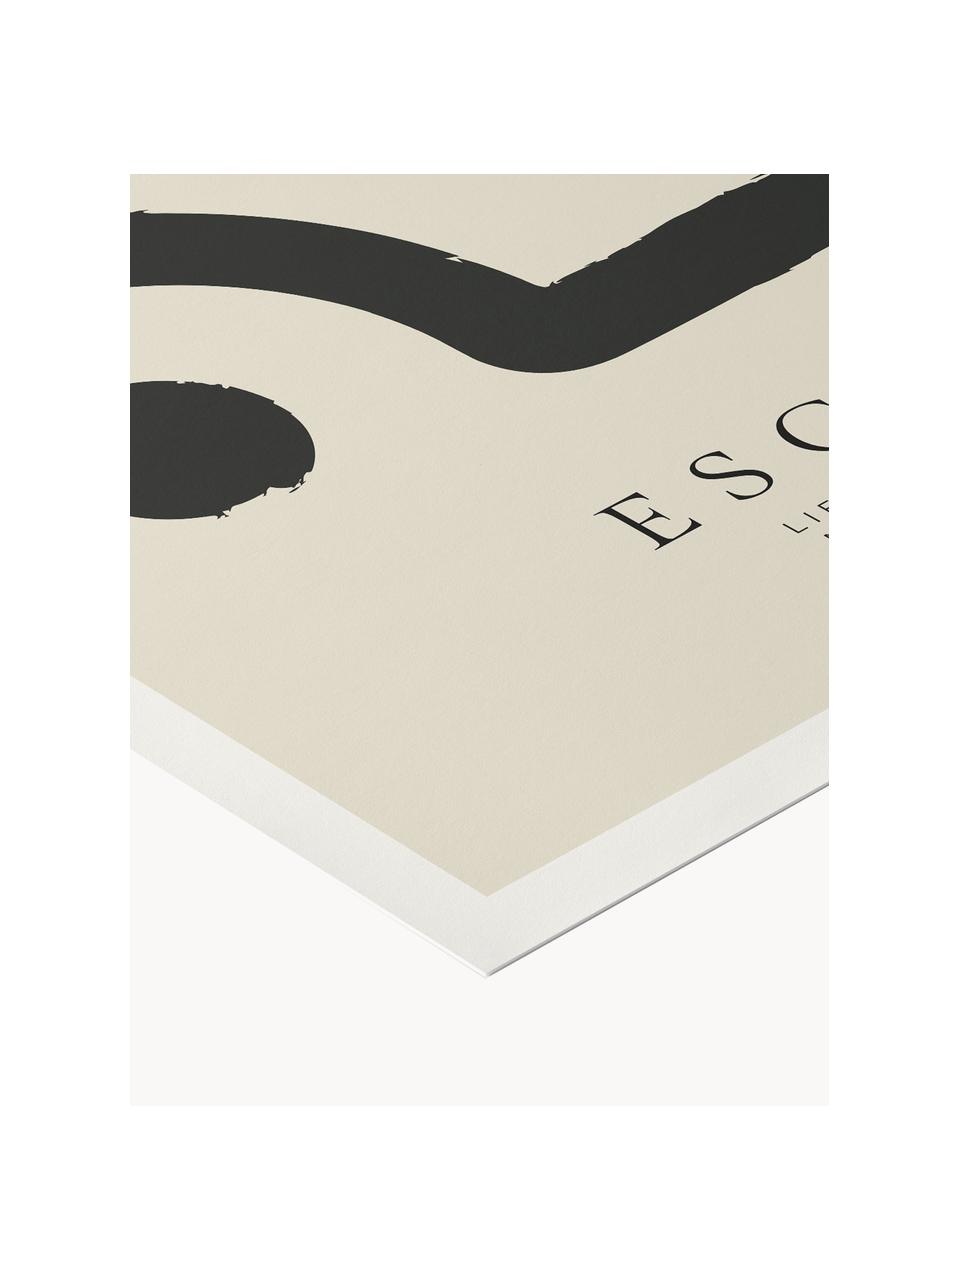 Plakat Escalar, Jasny beżowy, czarny, S 30 x W 40 cm